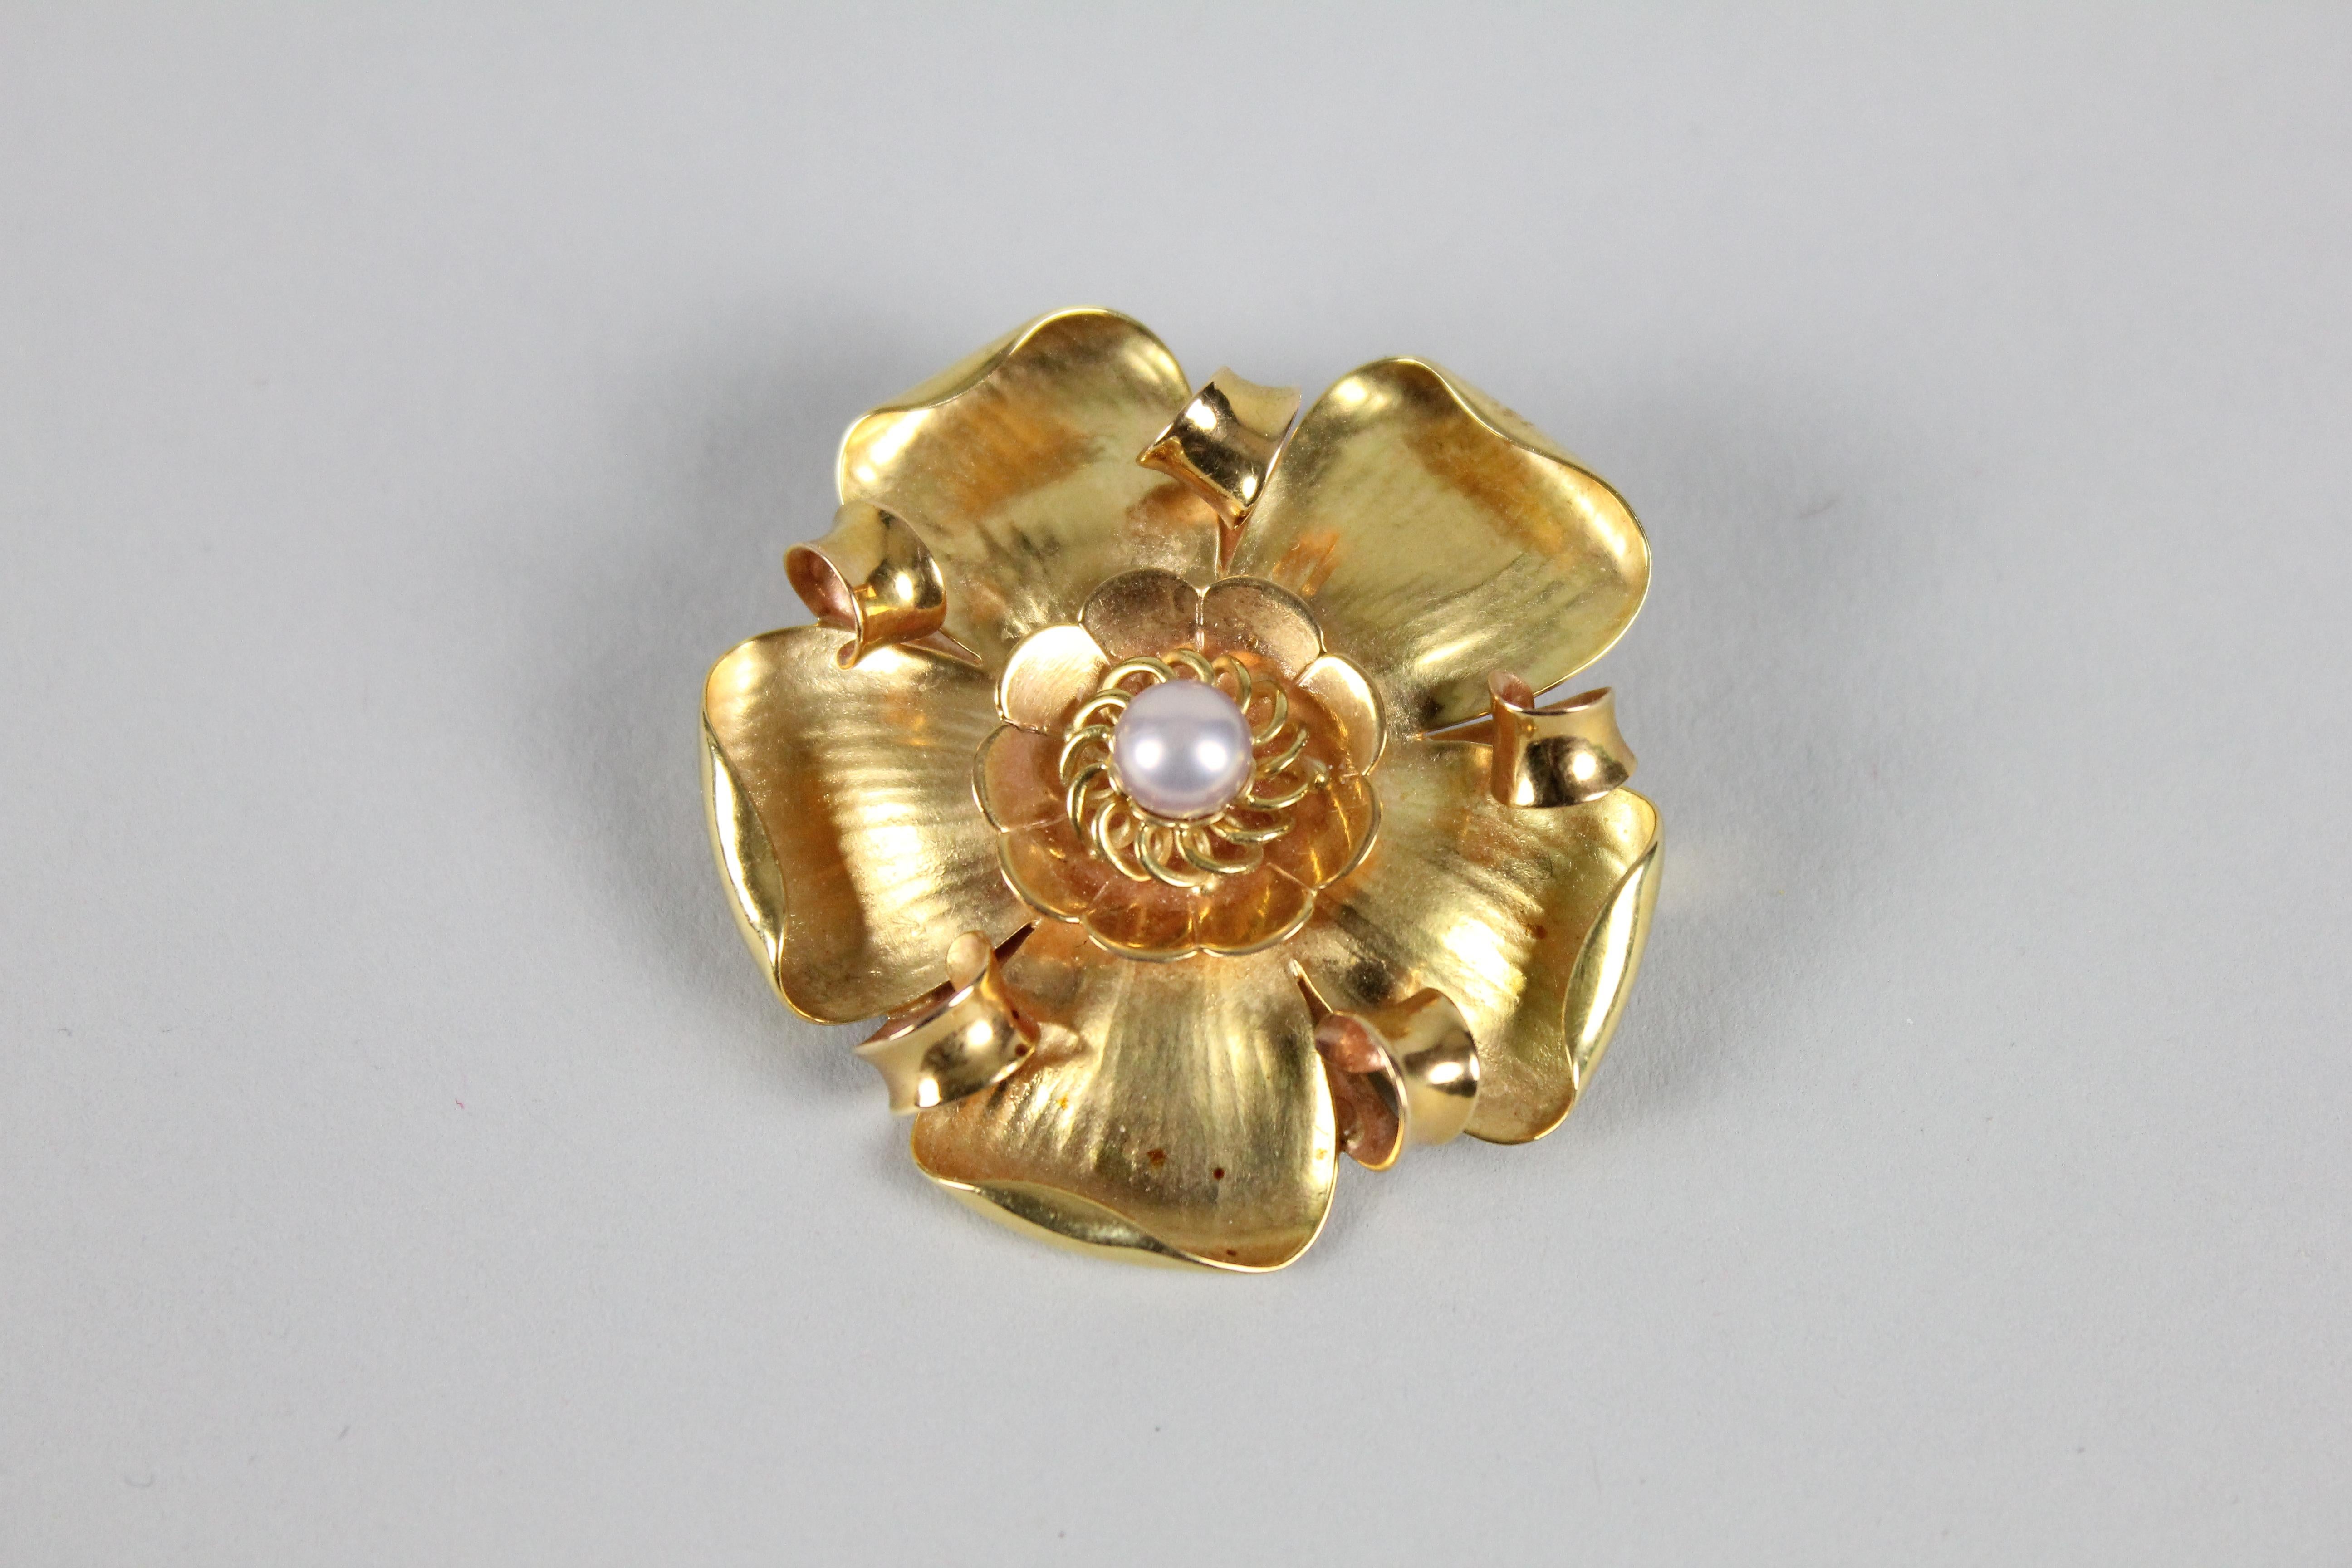 Magnifique broche en or 18k représentant une fleur.
Fabriqué par Erik Fleming (1894-1954) pour Borgila.
or 18k et une perle.
Excellent état, aucun problème.
Diamètre 4,5 cm (en 1,78)